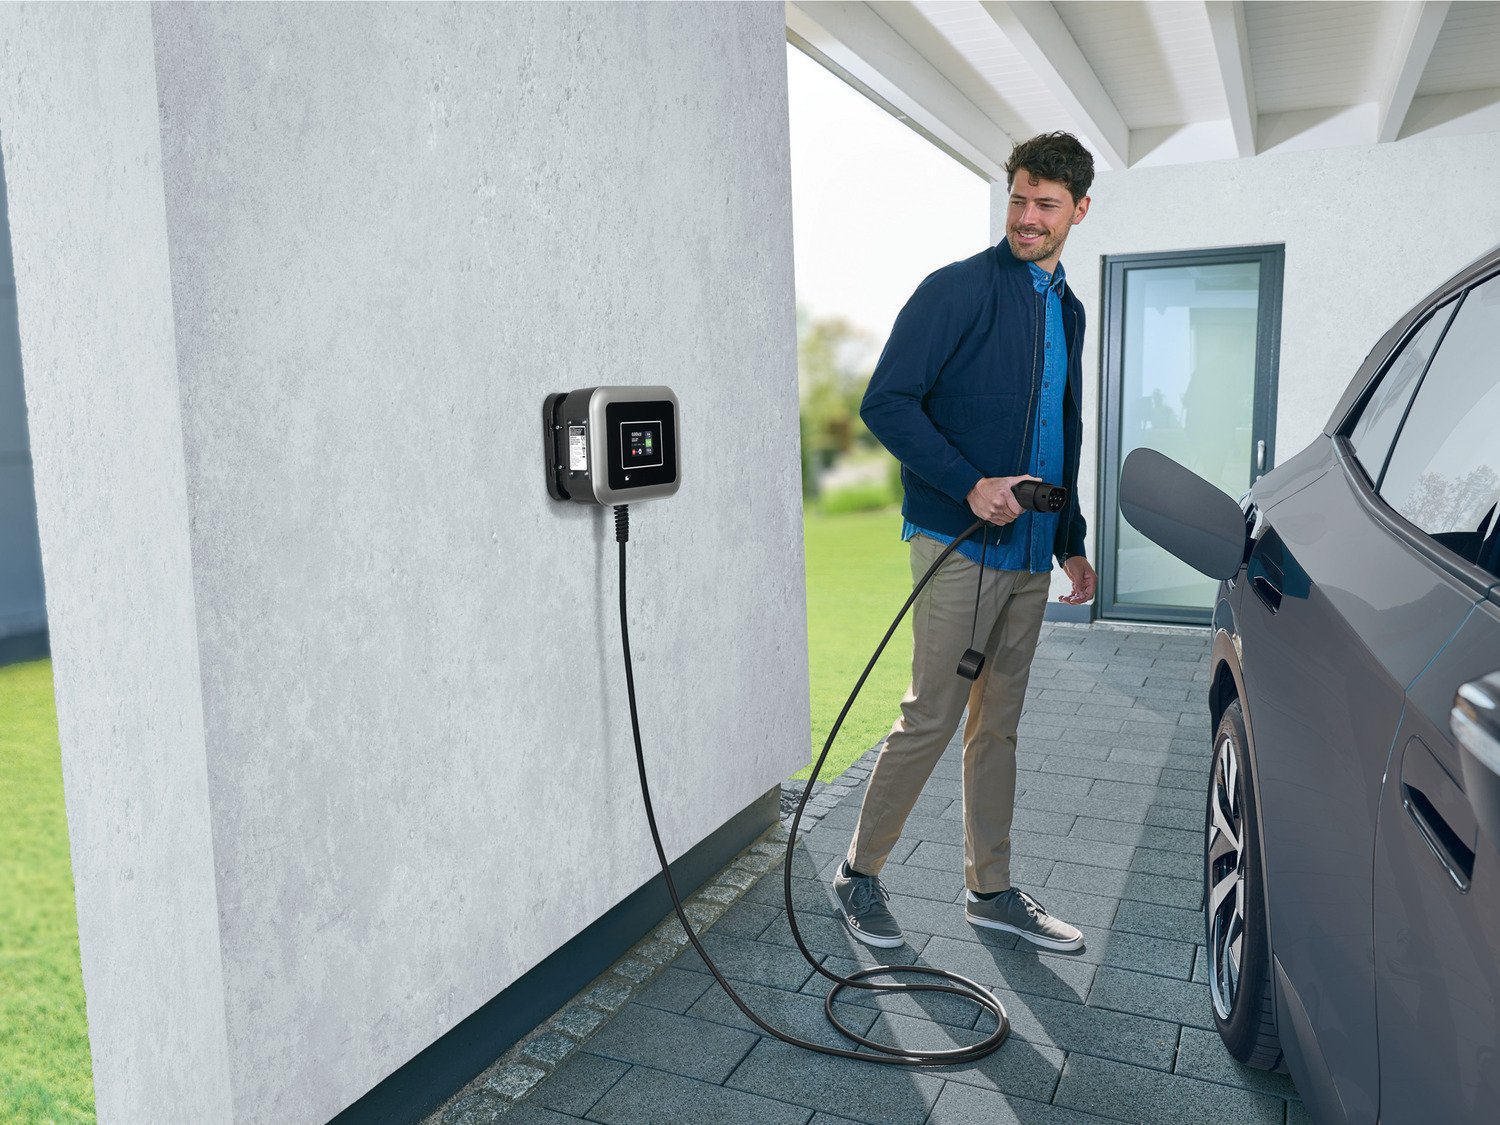 Borne de recharge pour voiture éléctrique - Borne EVSE EV Wallbox